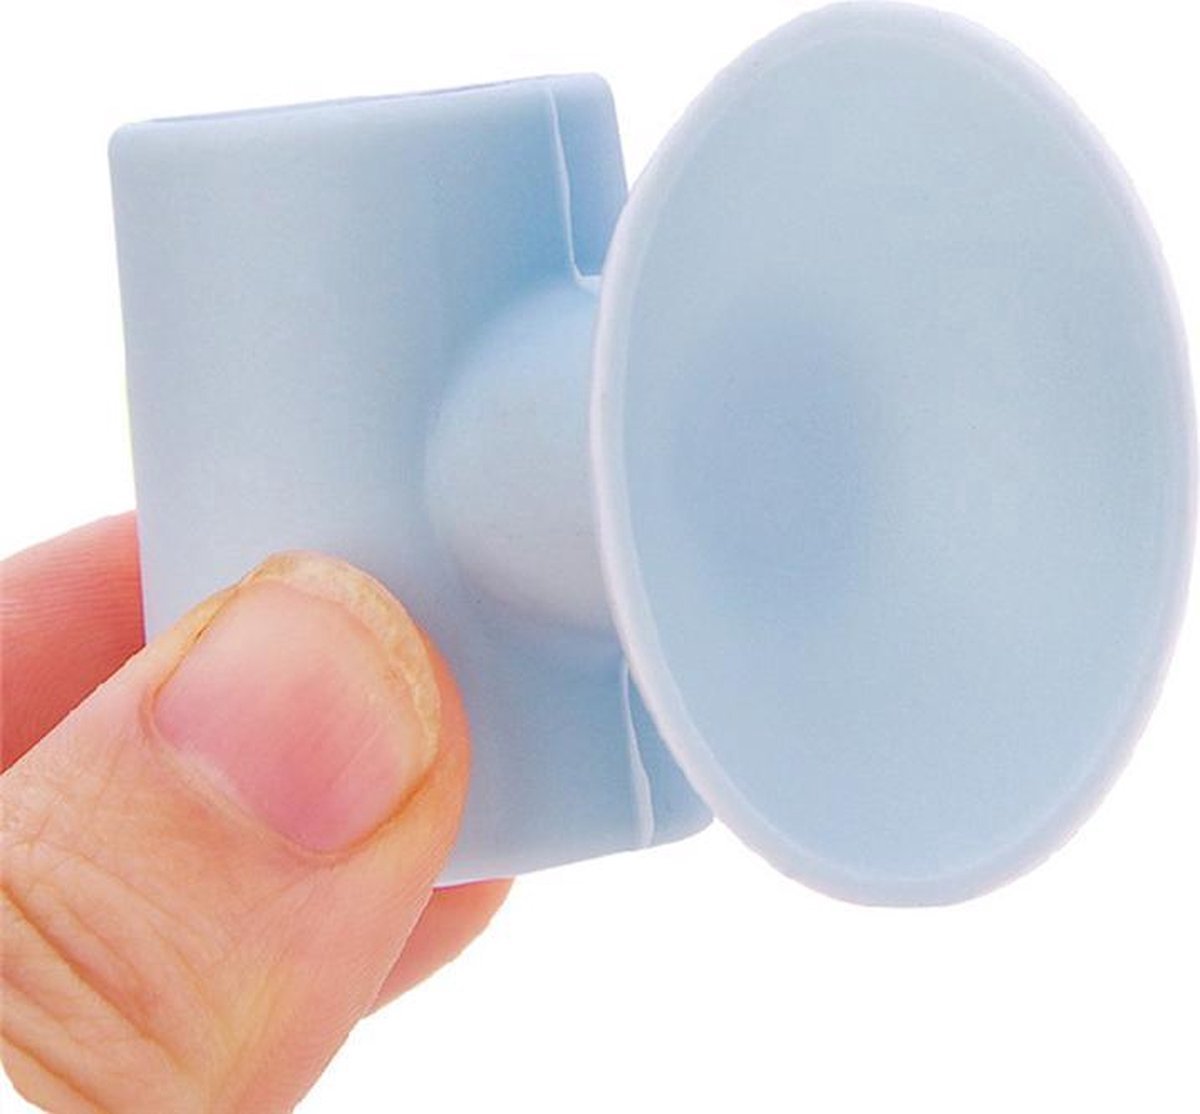 Deurstopper – Deur beschermer – Deurklink beschermer – Deur stopper – Buffer – muur beschermer – 2 stuks – Blauw/Grijs